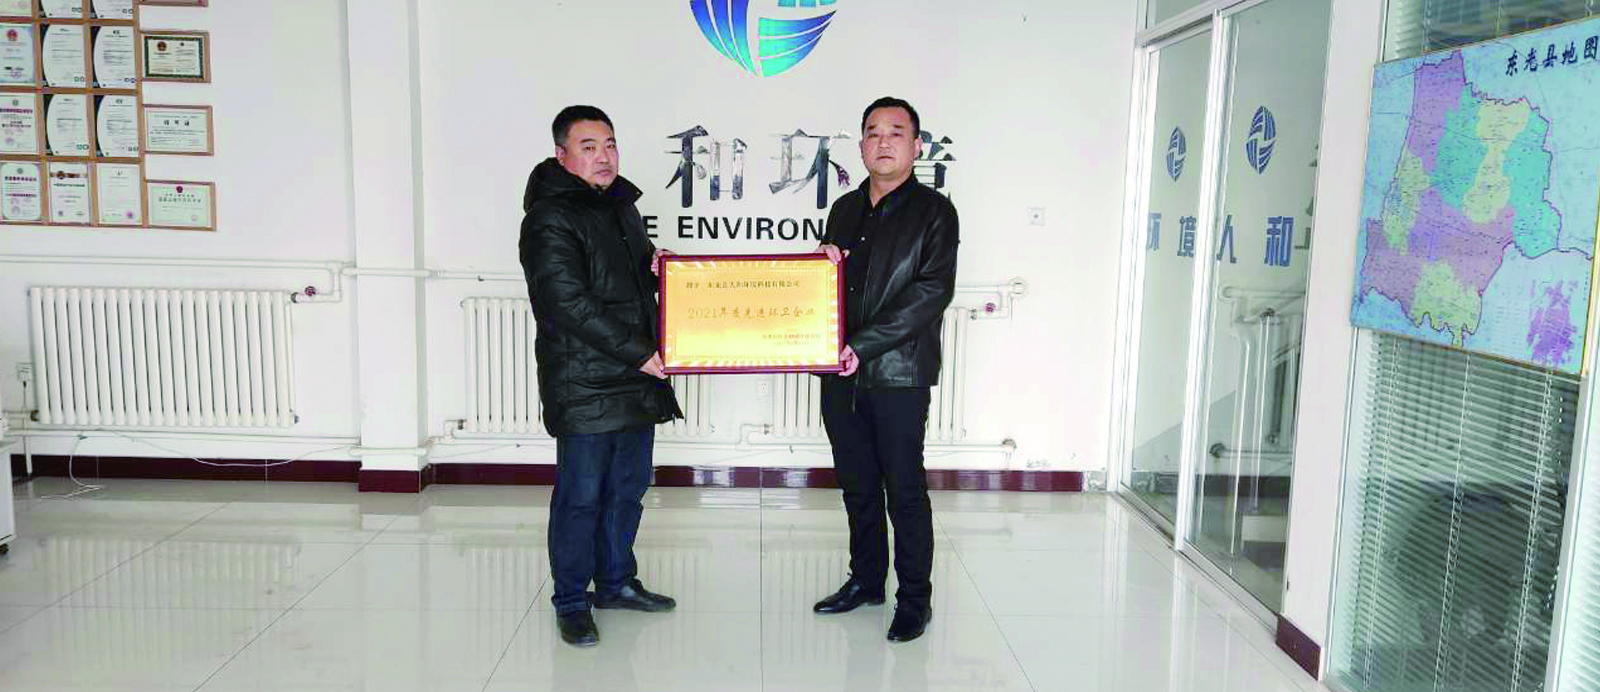 人和環境東光項目公司榮獲“2021年度先進環衛企業”榮譽獎牌